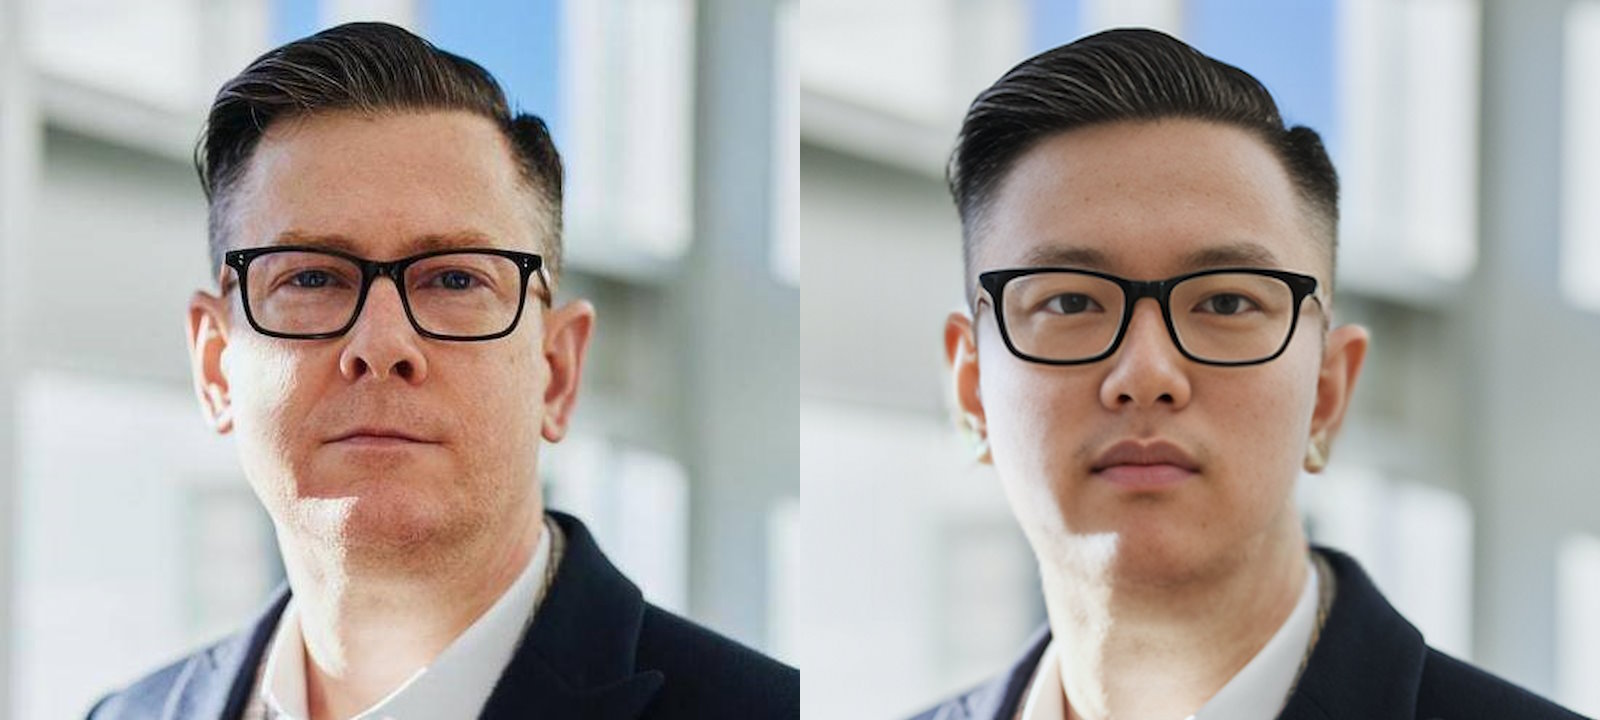 À gauche, une image provenant d’une banque d’images. À droite, une version modifiée par IA utilisée par un Nord-coréen pour postuler dans une entreprise de cybersécurité américaine. © KnowBe4